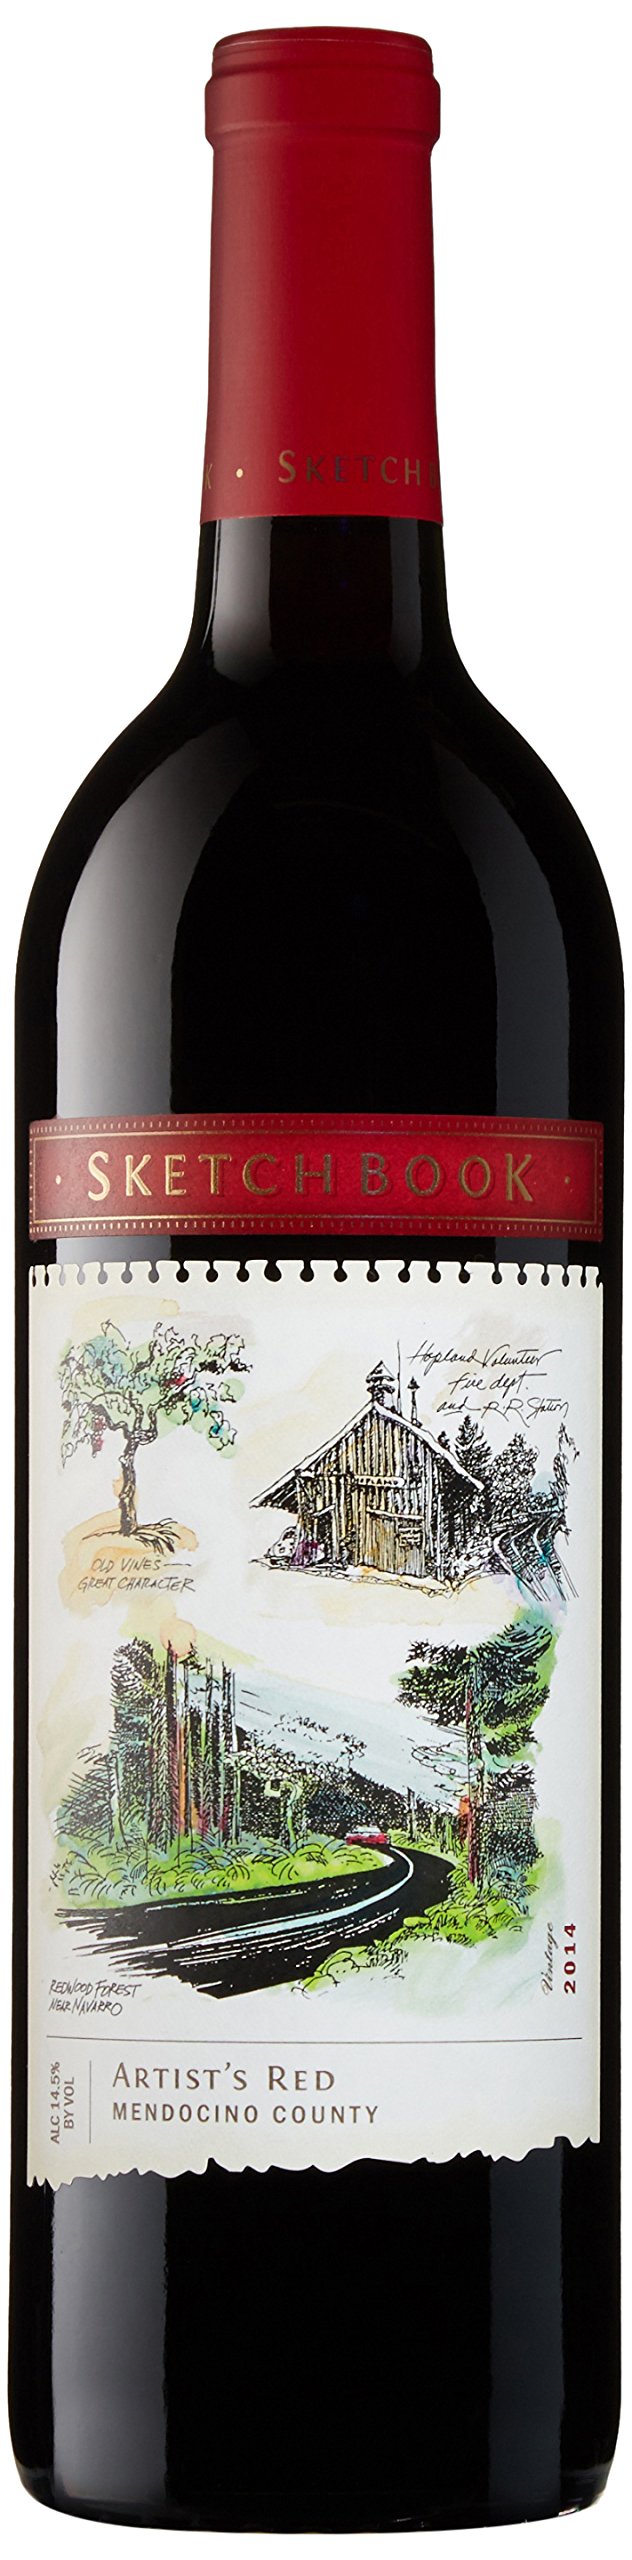 images/wine/Red Wine/Sketchbook Artist's Red Blend.jpg